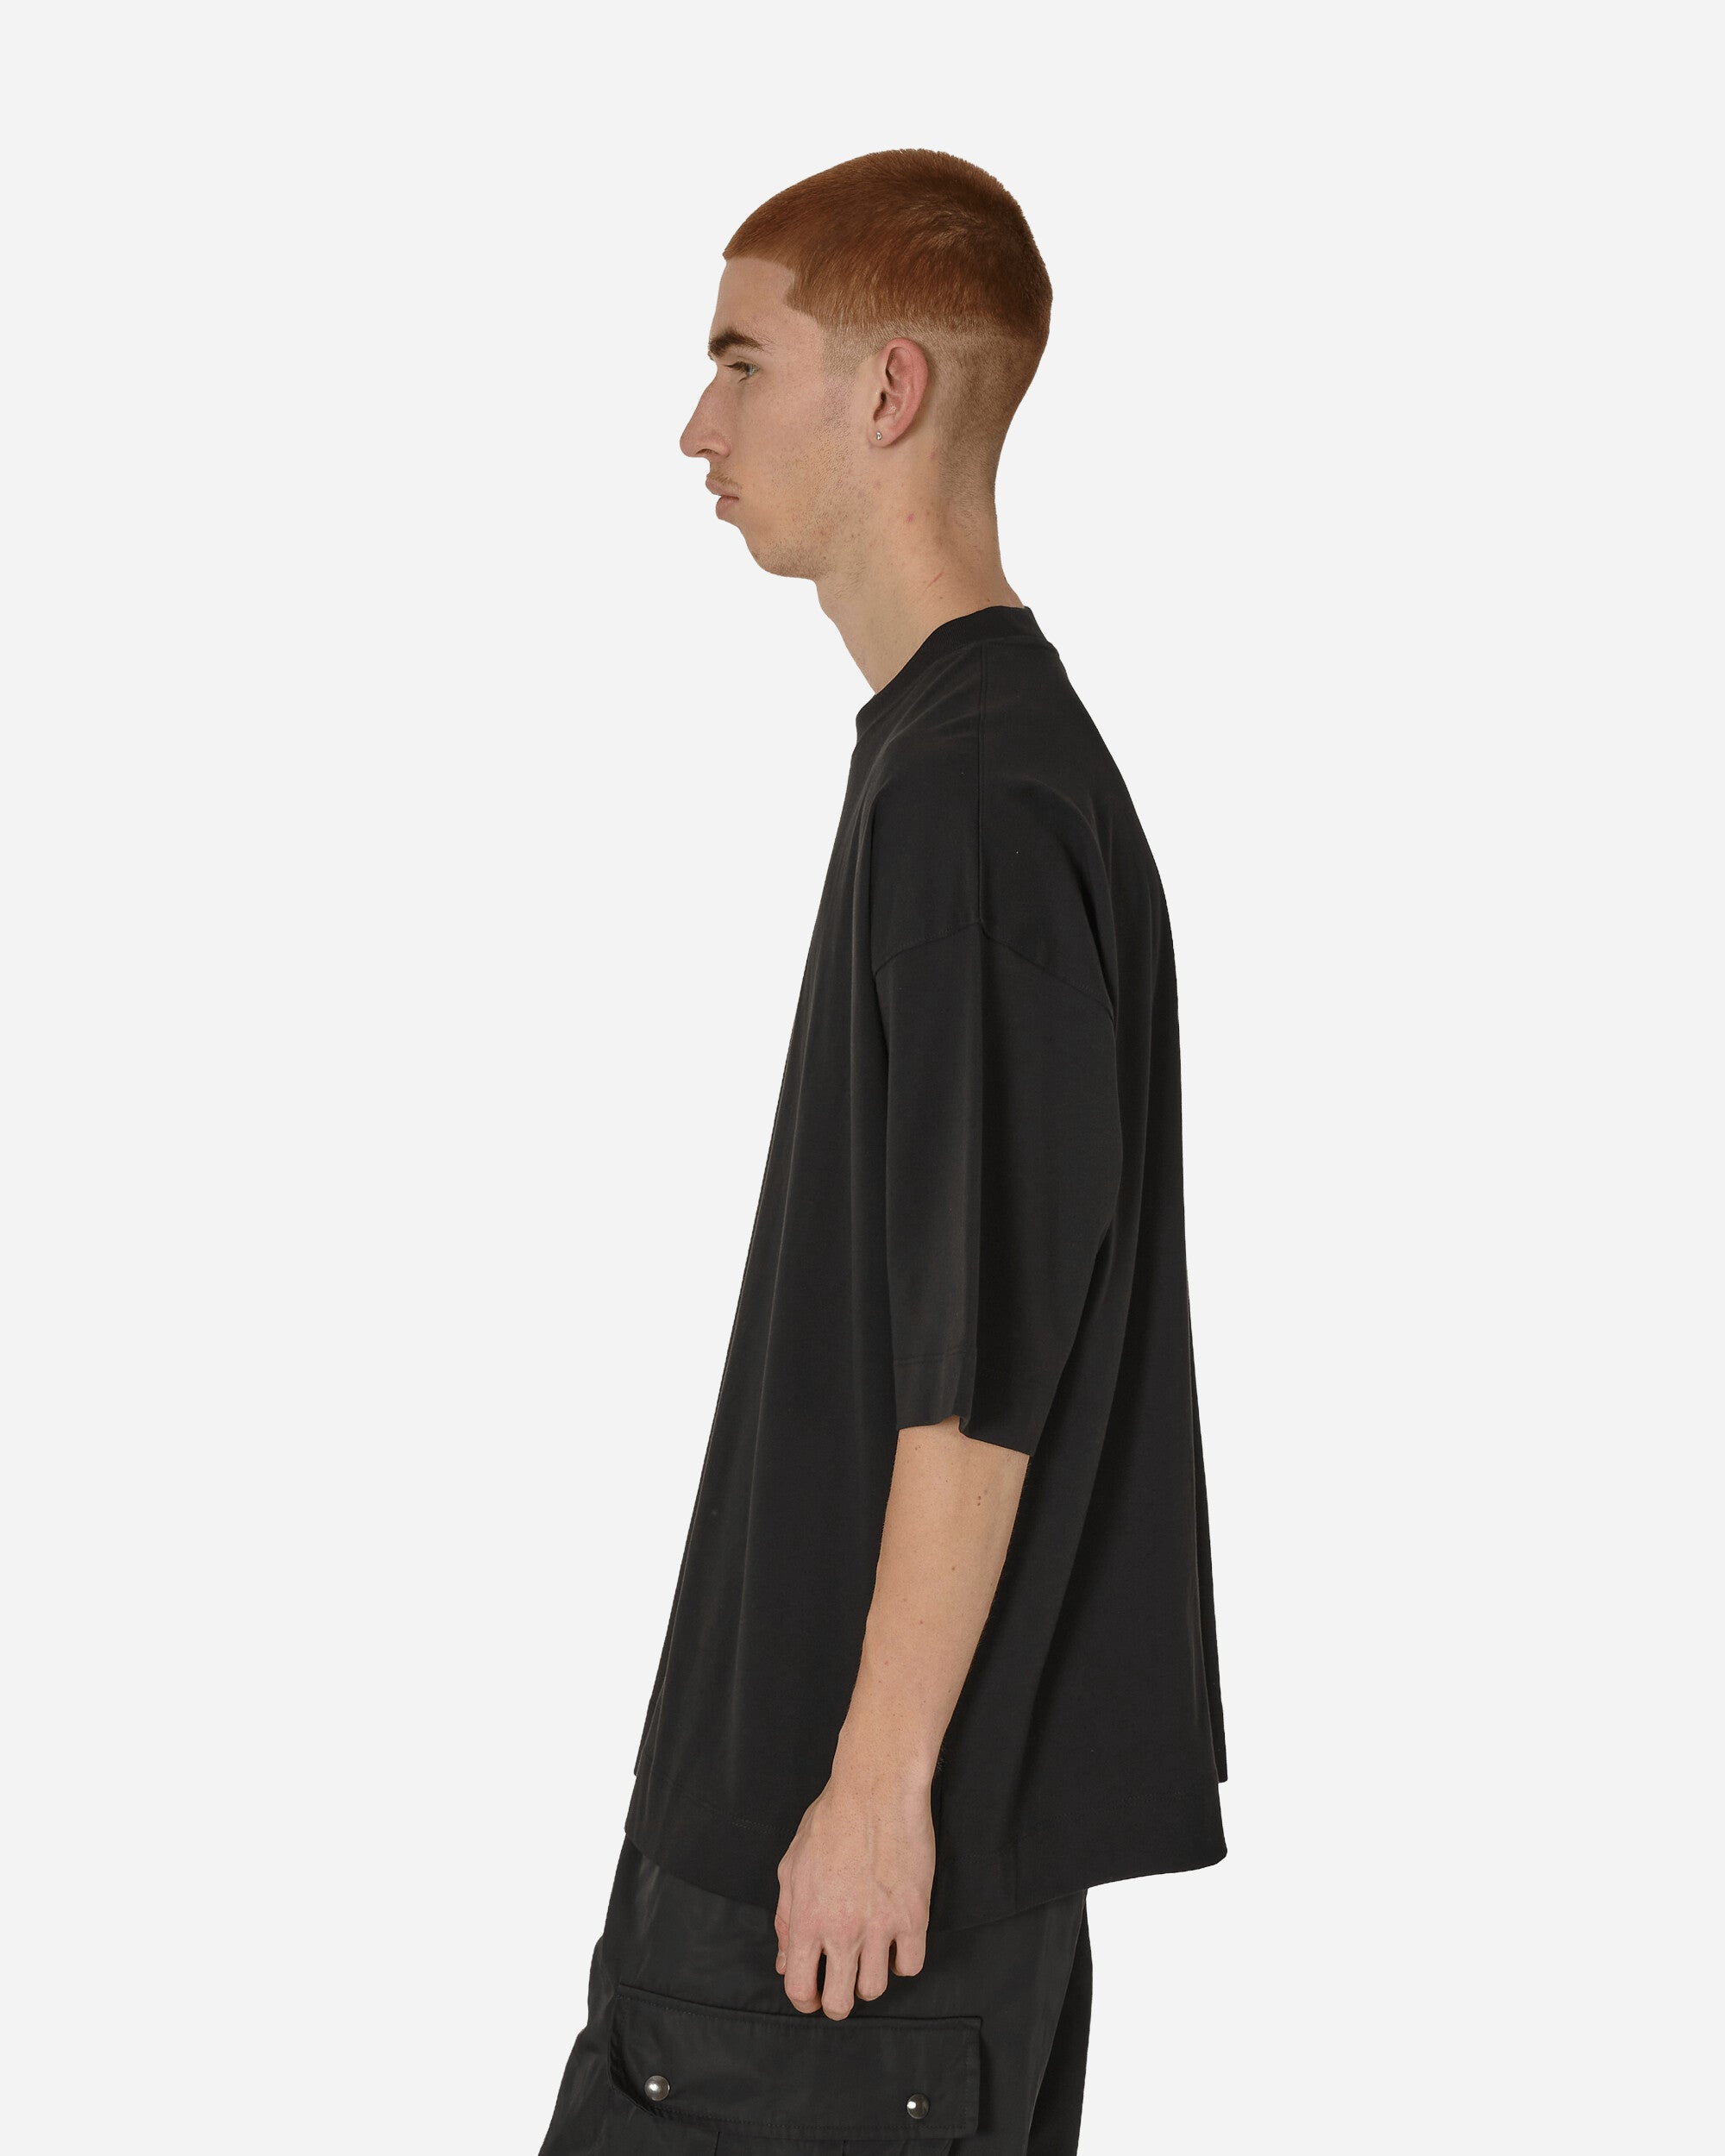 Dries Van Noten Hen T-Shirt Black T-Shirts Shortsleeve 241-021117-8603 900